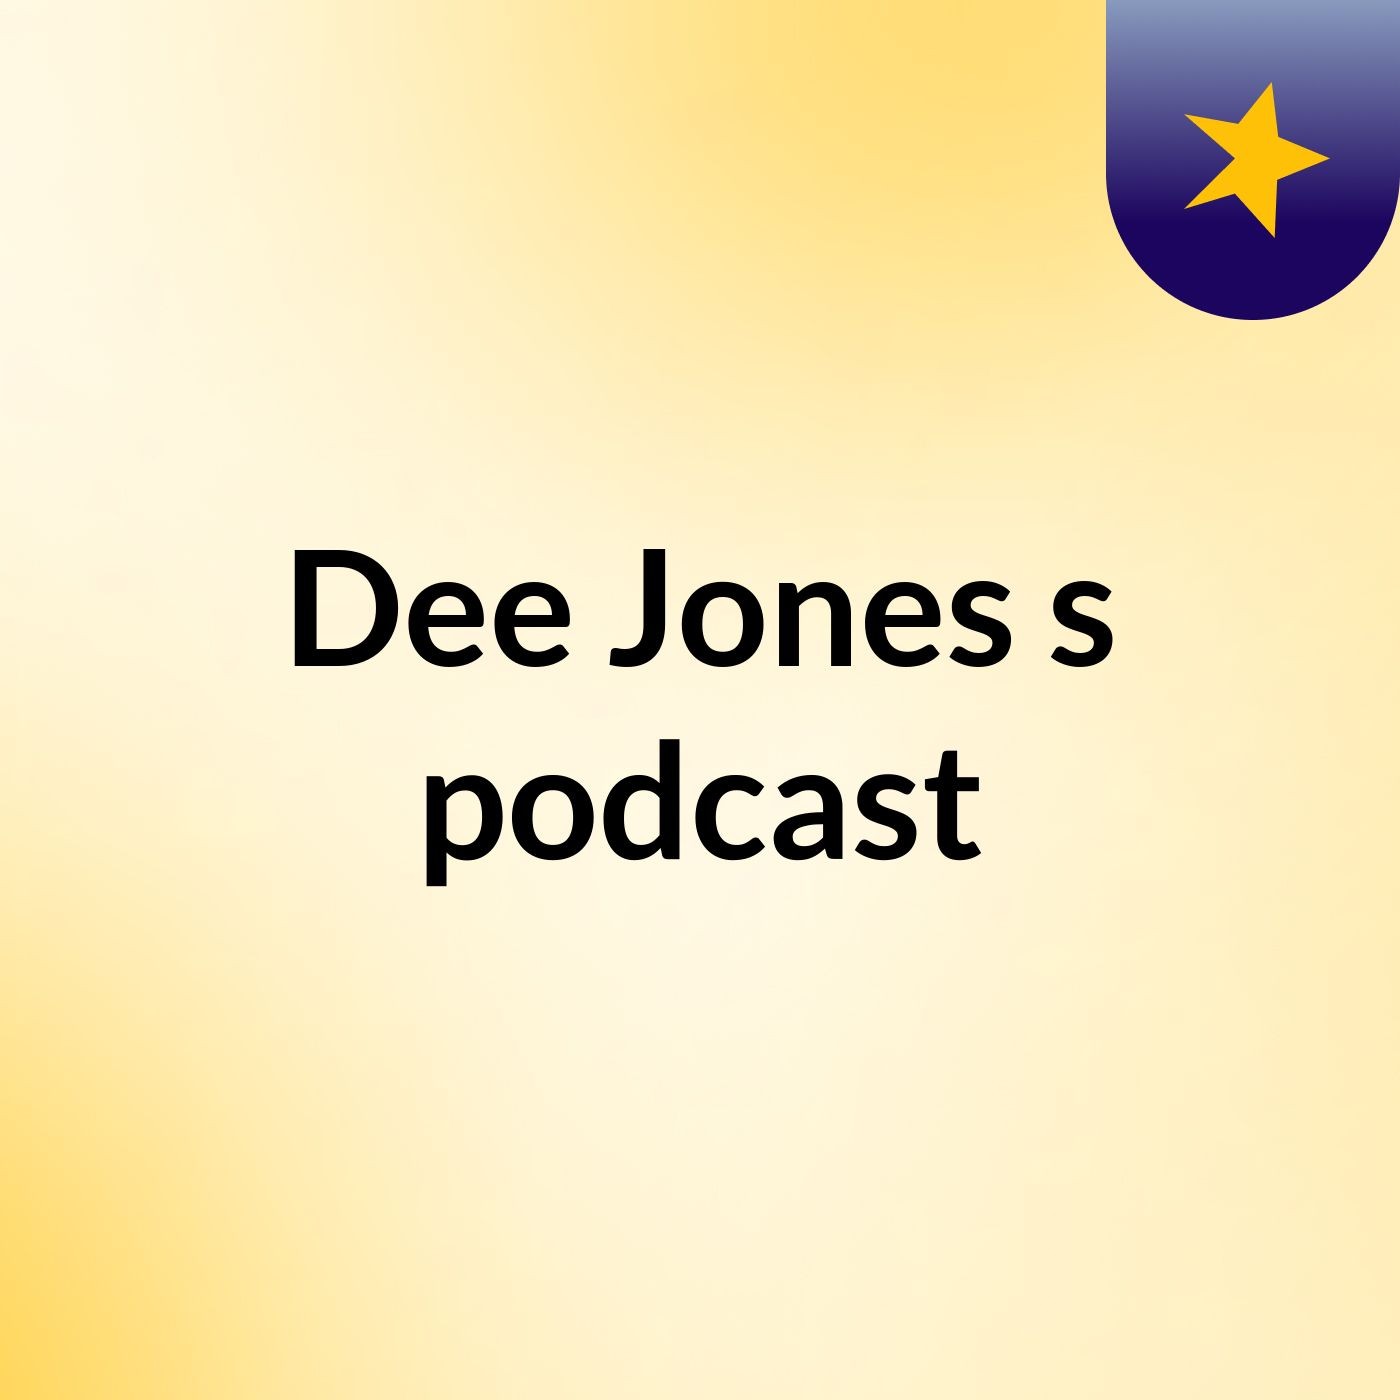 Dee Jones's podcast